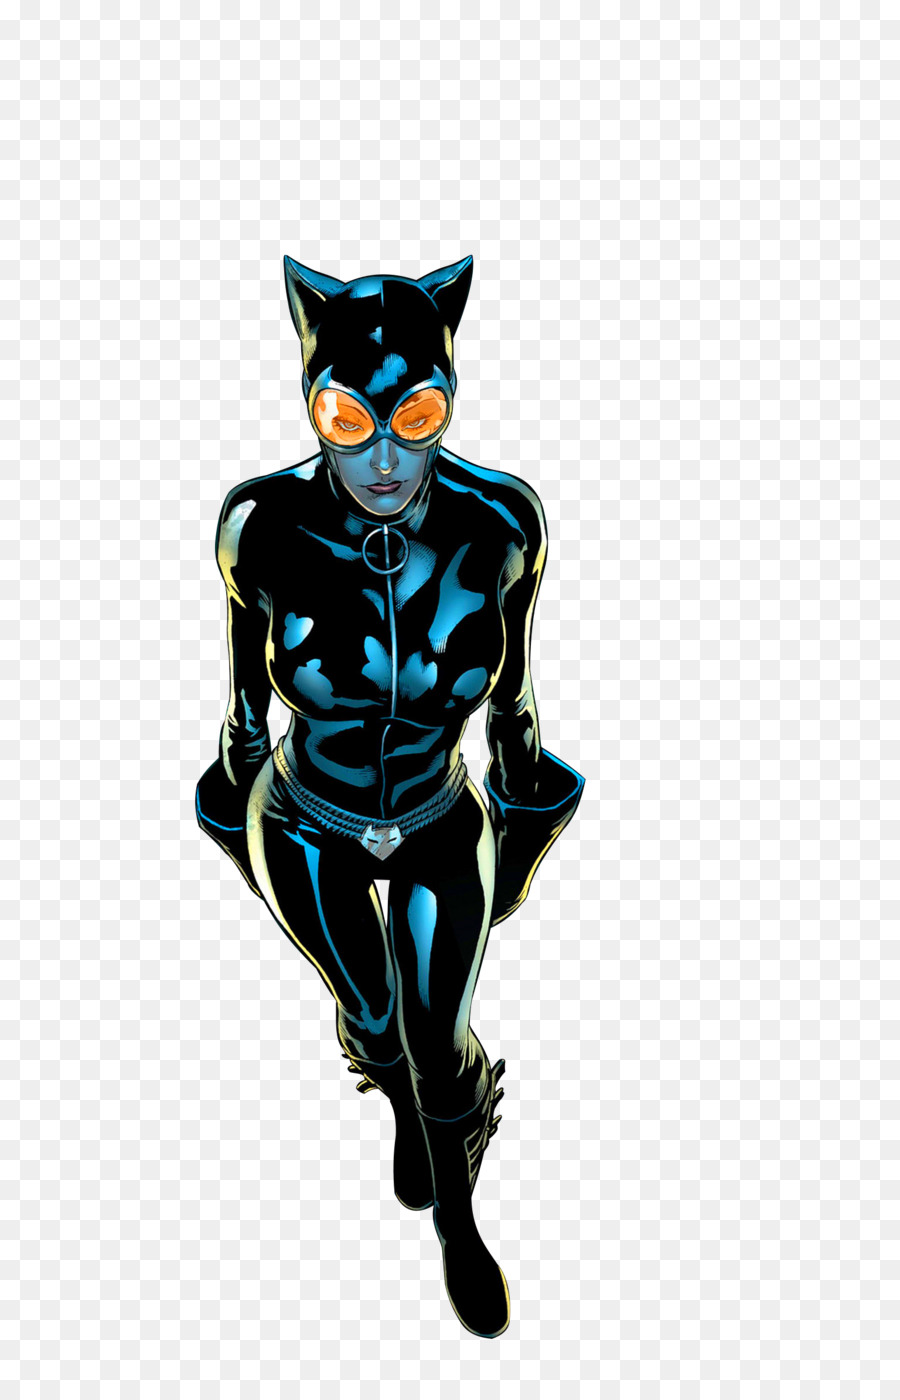 Catwoman Batman Batgirl DC Comics - catwoman png download - 900*1384 - Free Transparent Catwoman png Download.